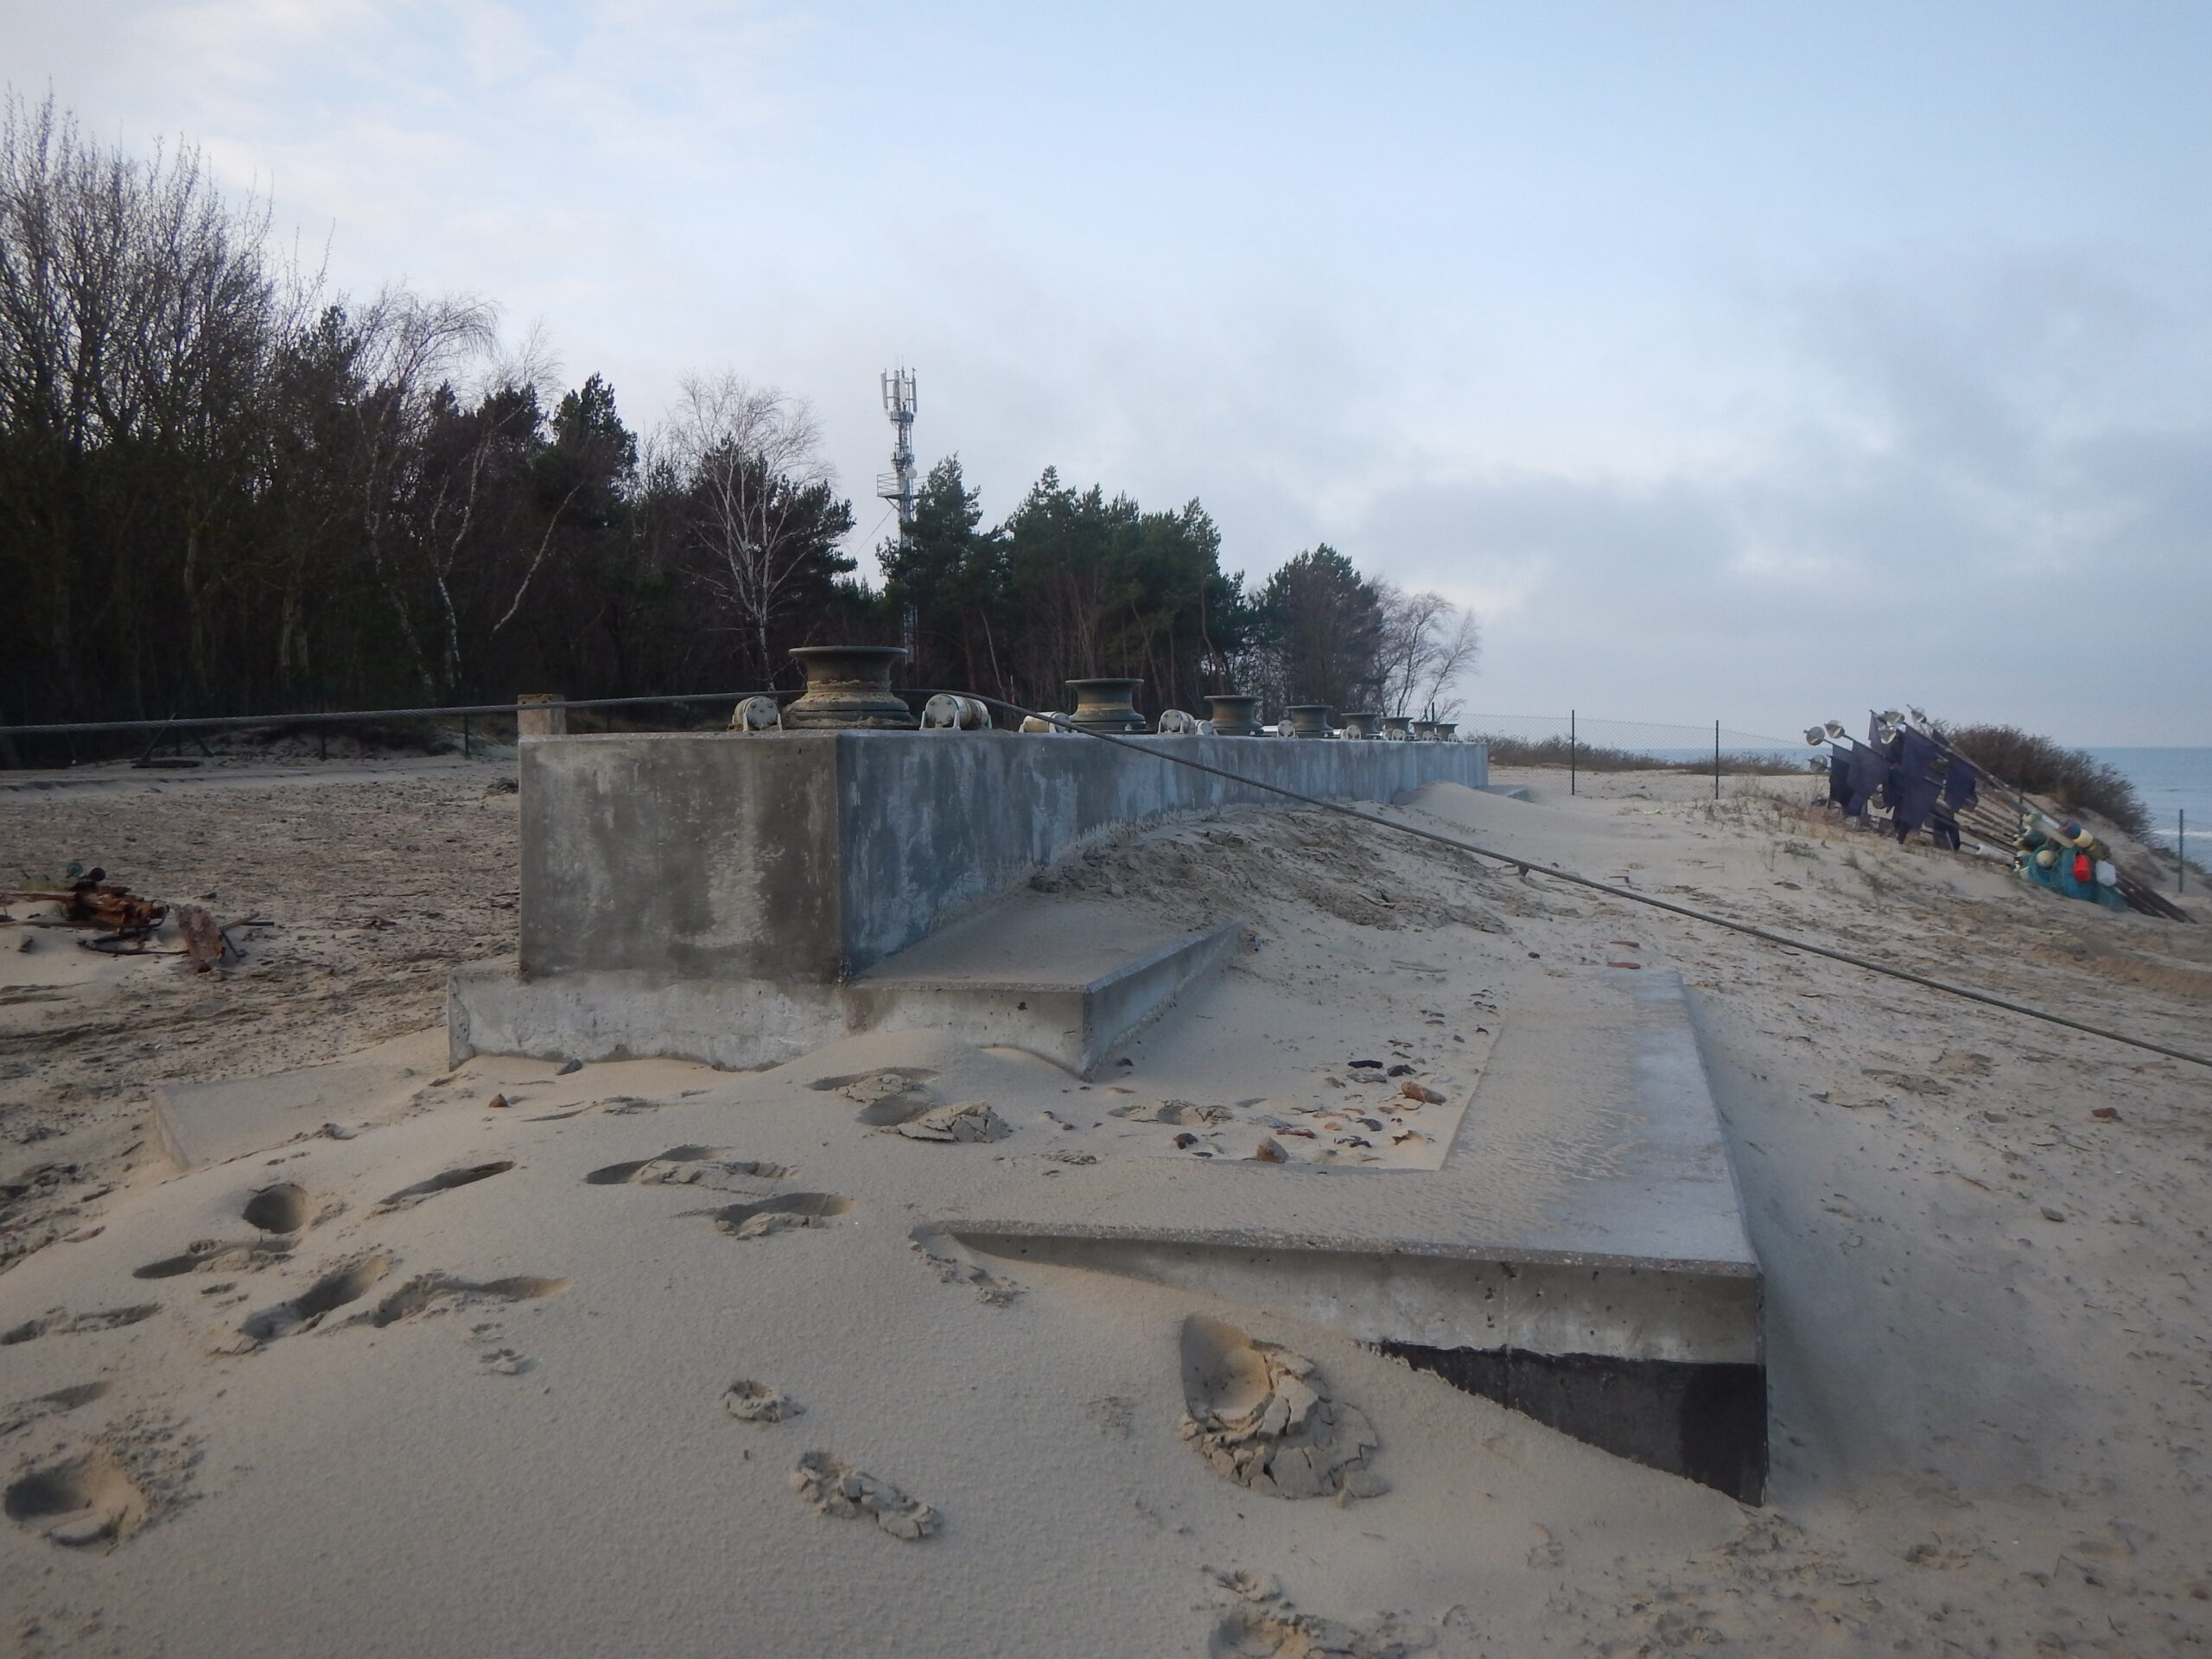 zbrojony mur na plaży z metalowymi rolkami